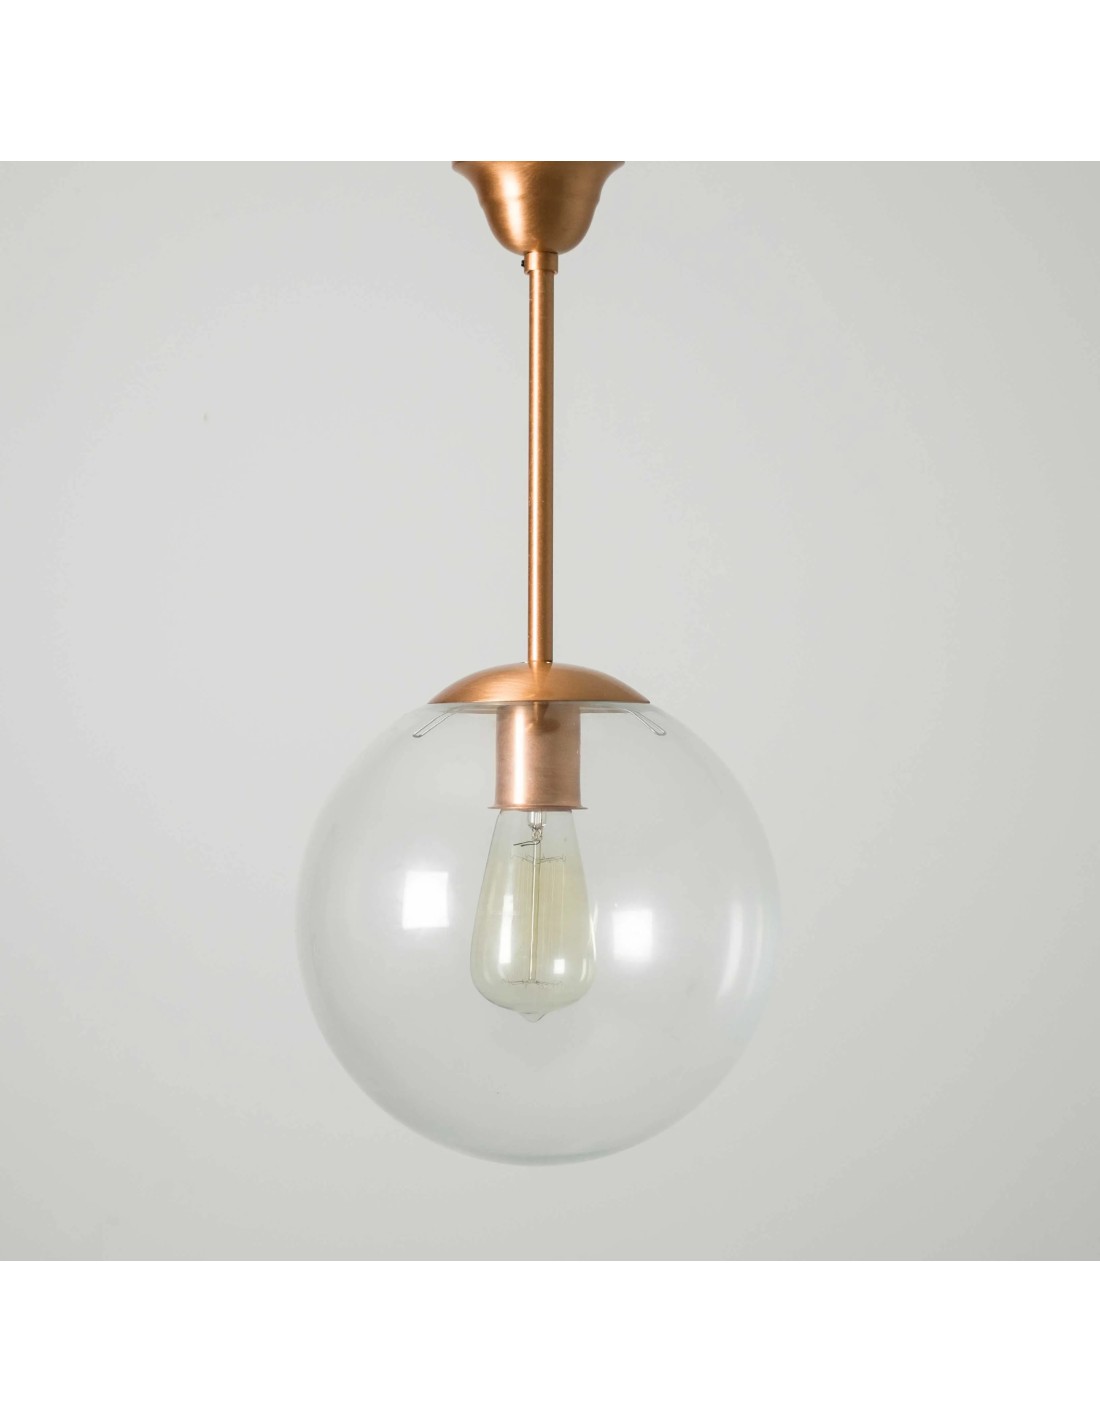 lámpara vintage con una bola de cristal transparente con acabado cobre brillante en la tija y en el soporte.